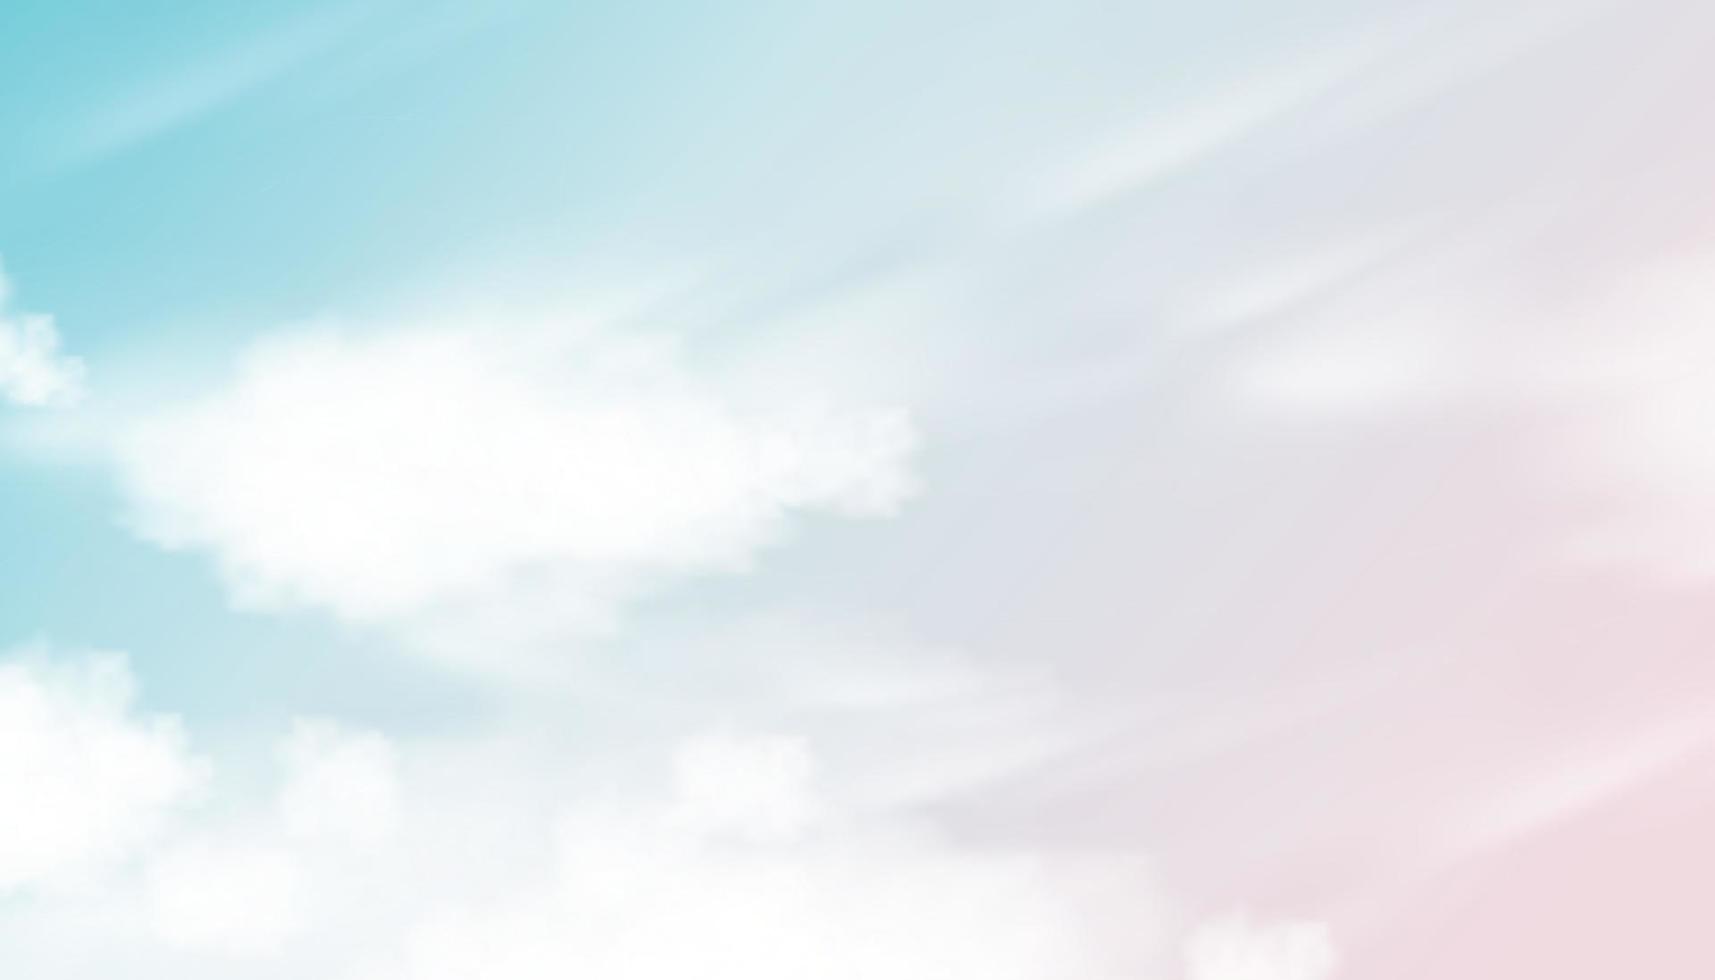 Morgenhimmel mit blauen und rosafarbenen Pastelltönen mit flauschigen Wolken, Vektorschöner Naturrosa-Sonnenuntergang im Frühling oder Sommer, Illustrationsverlauf verschwommener Himmel süßer und romantischer Hintergrund für Banner mit vier Jahreszeiten vektor